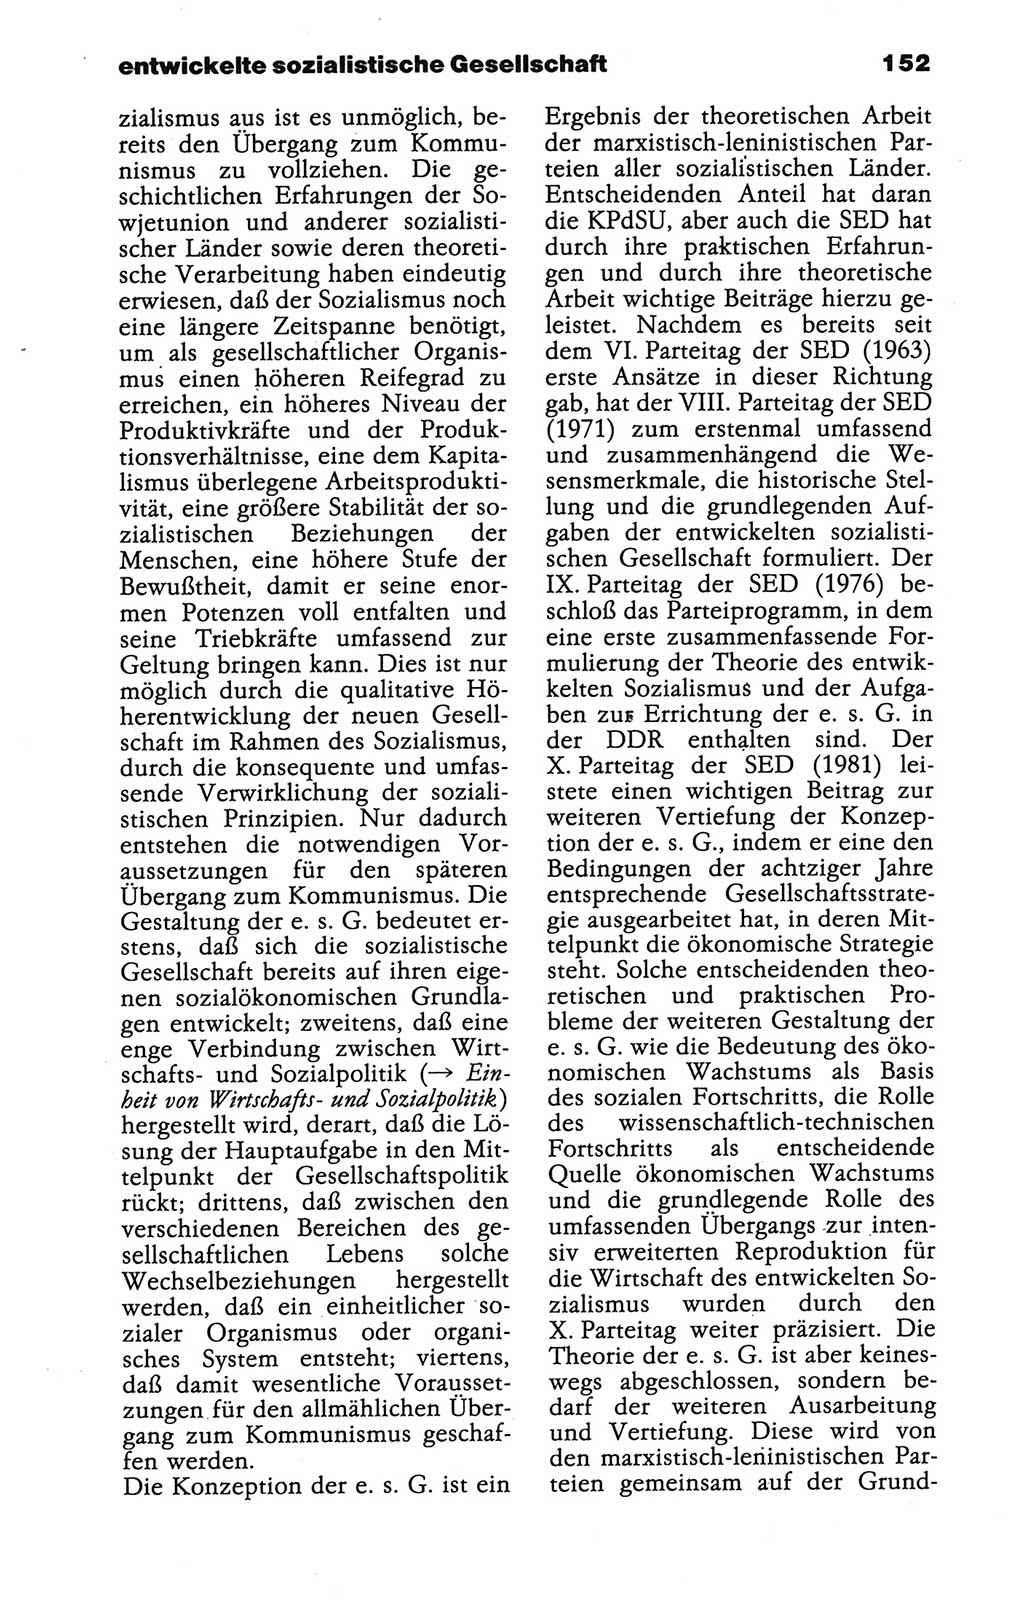 Wörterbuch der marxistisch-leninistischen Philosophie [Deutsche Demokratische Republik (DDR)] 1986, Seite 152 (Wb. ML Phil. DDR 1986, S. 152)